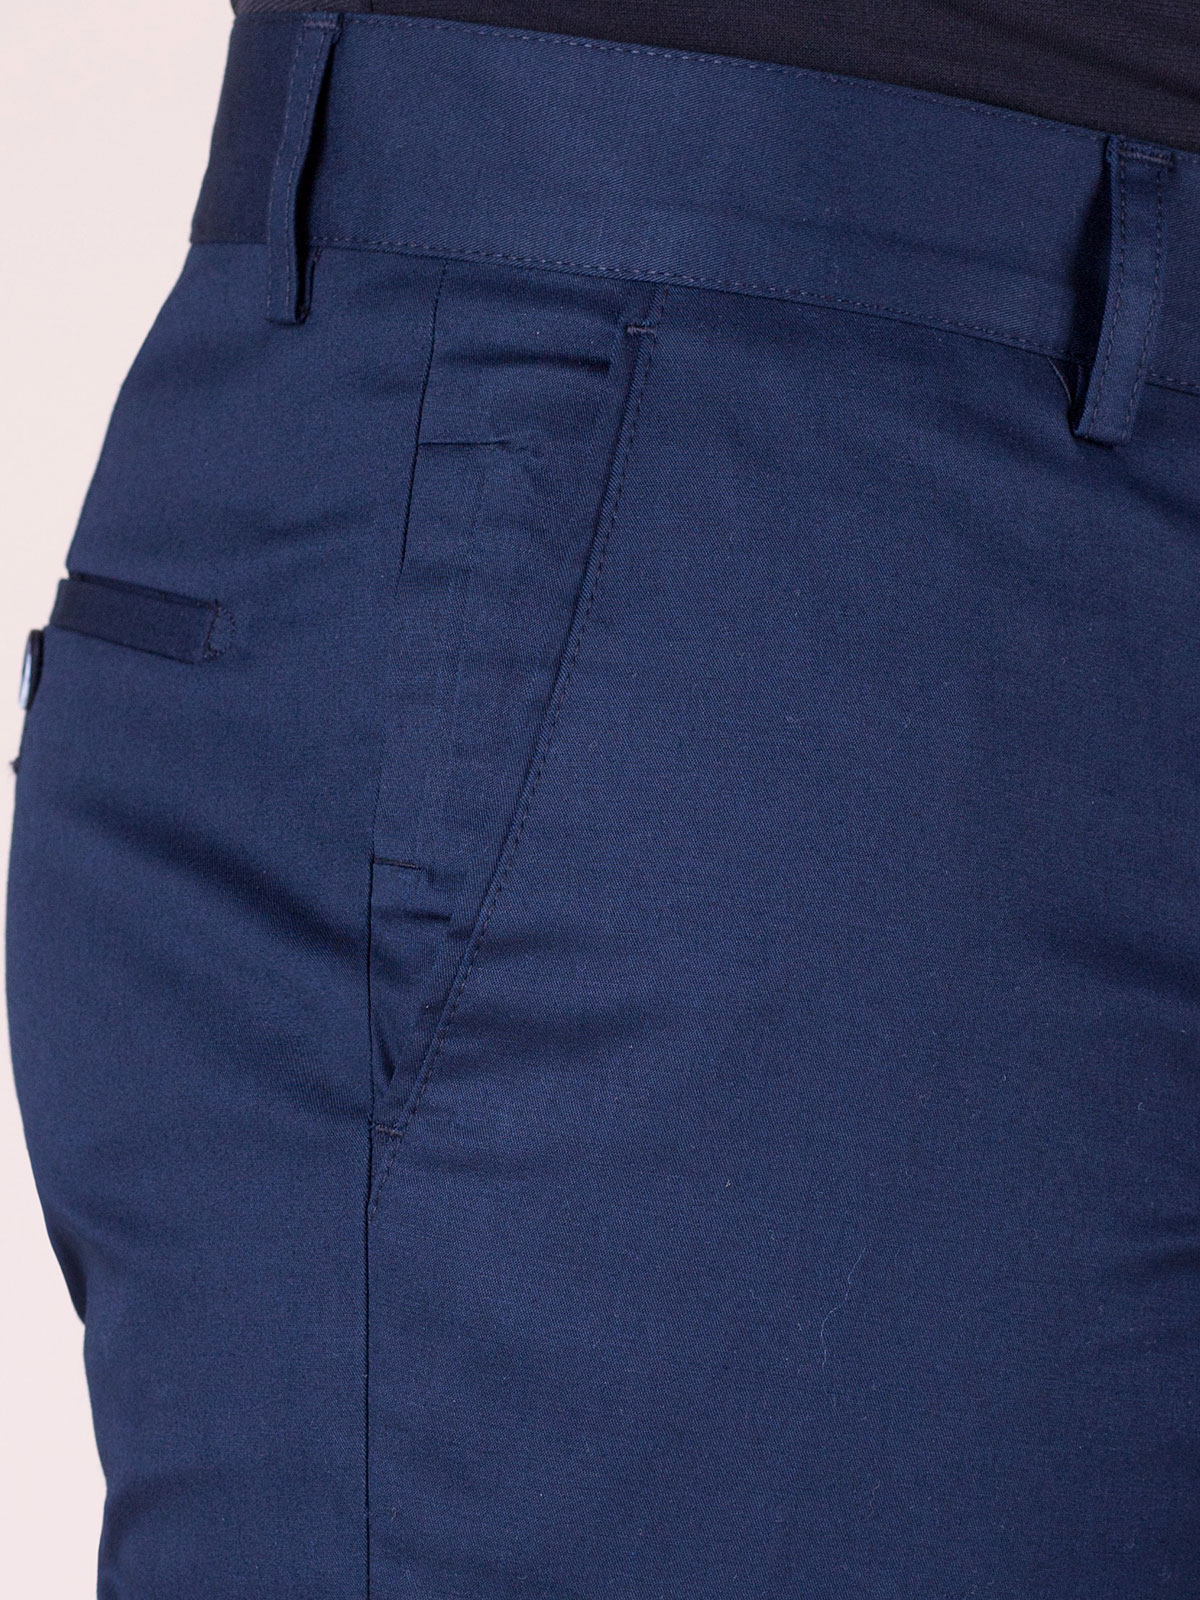 Παντελόνι σε σκούρο μπλε με εφαρμοστή σ - 60244 € 14.06 img3